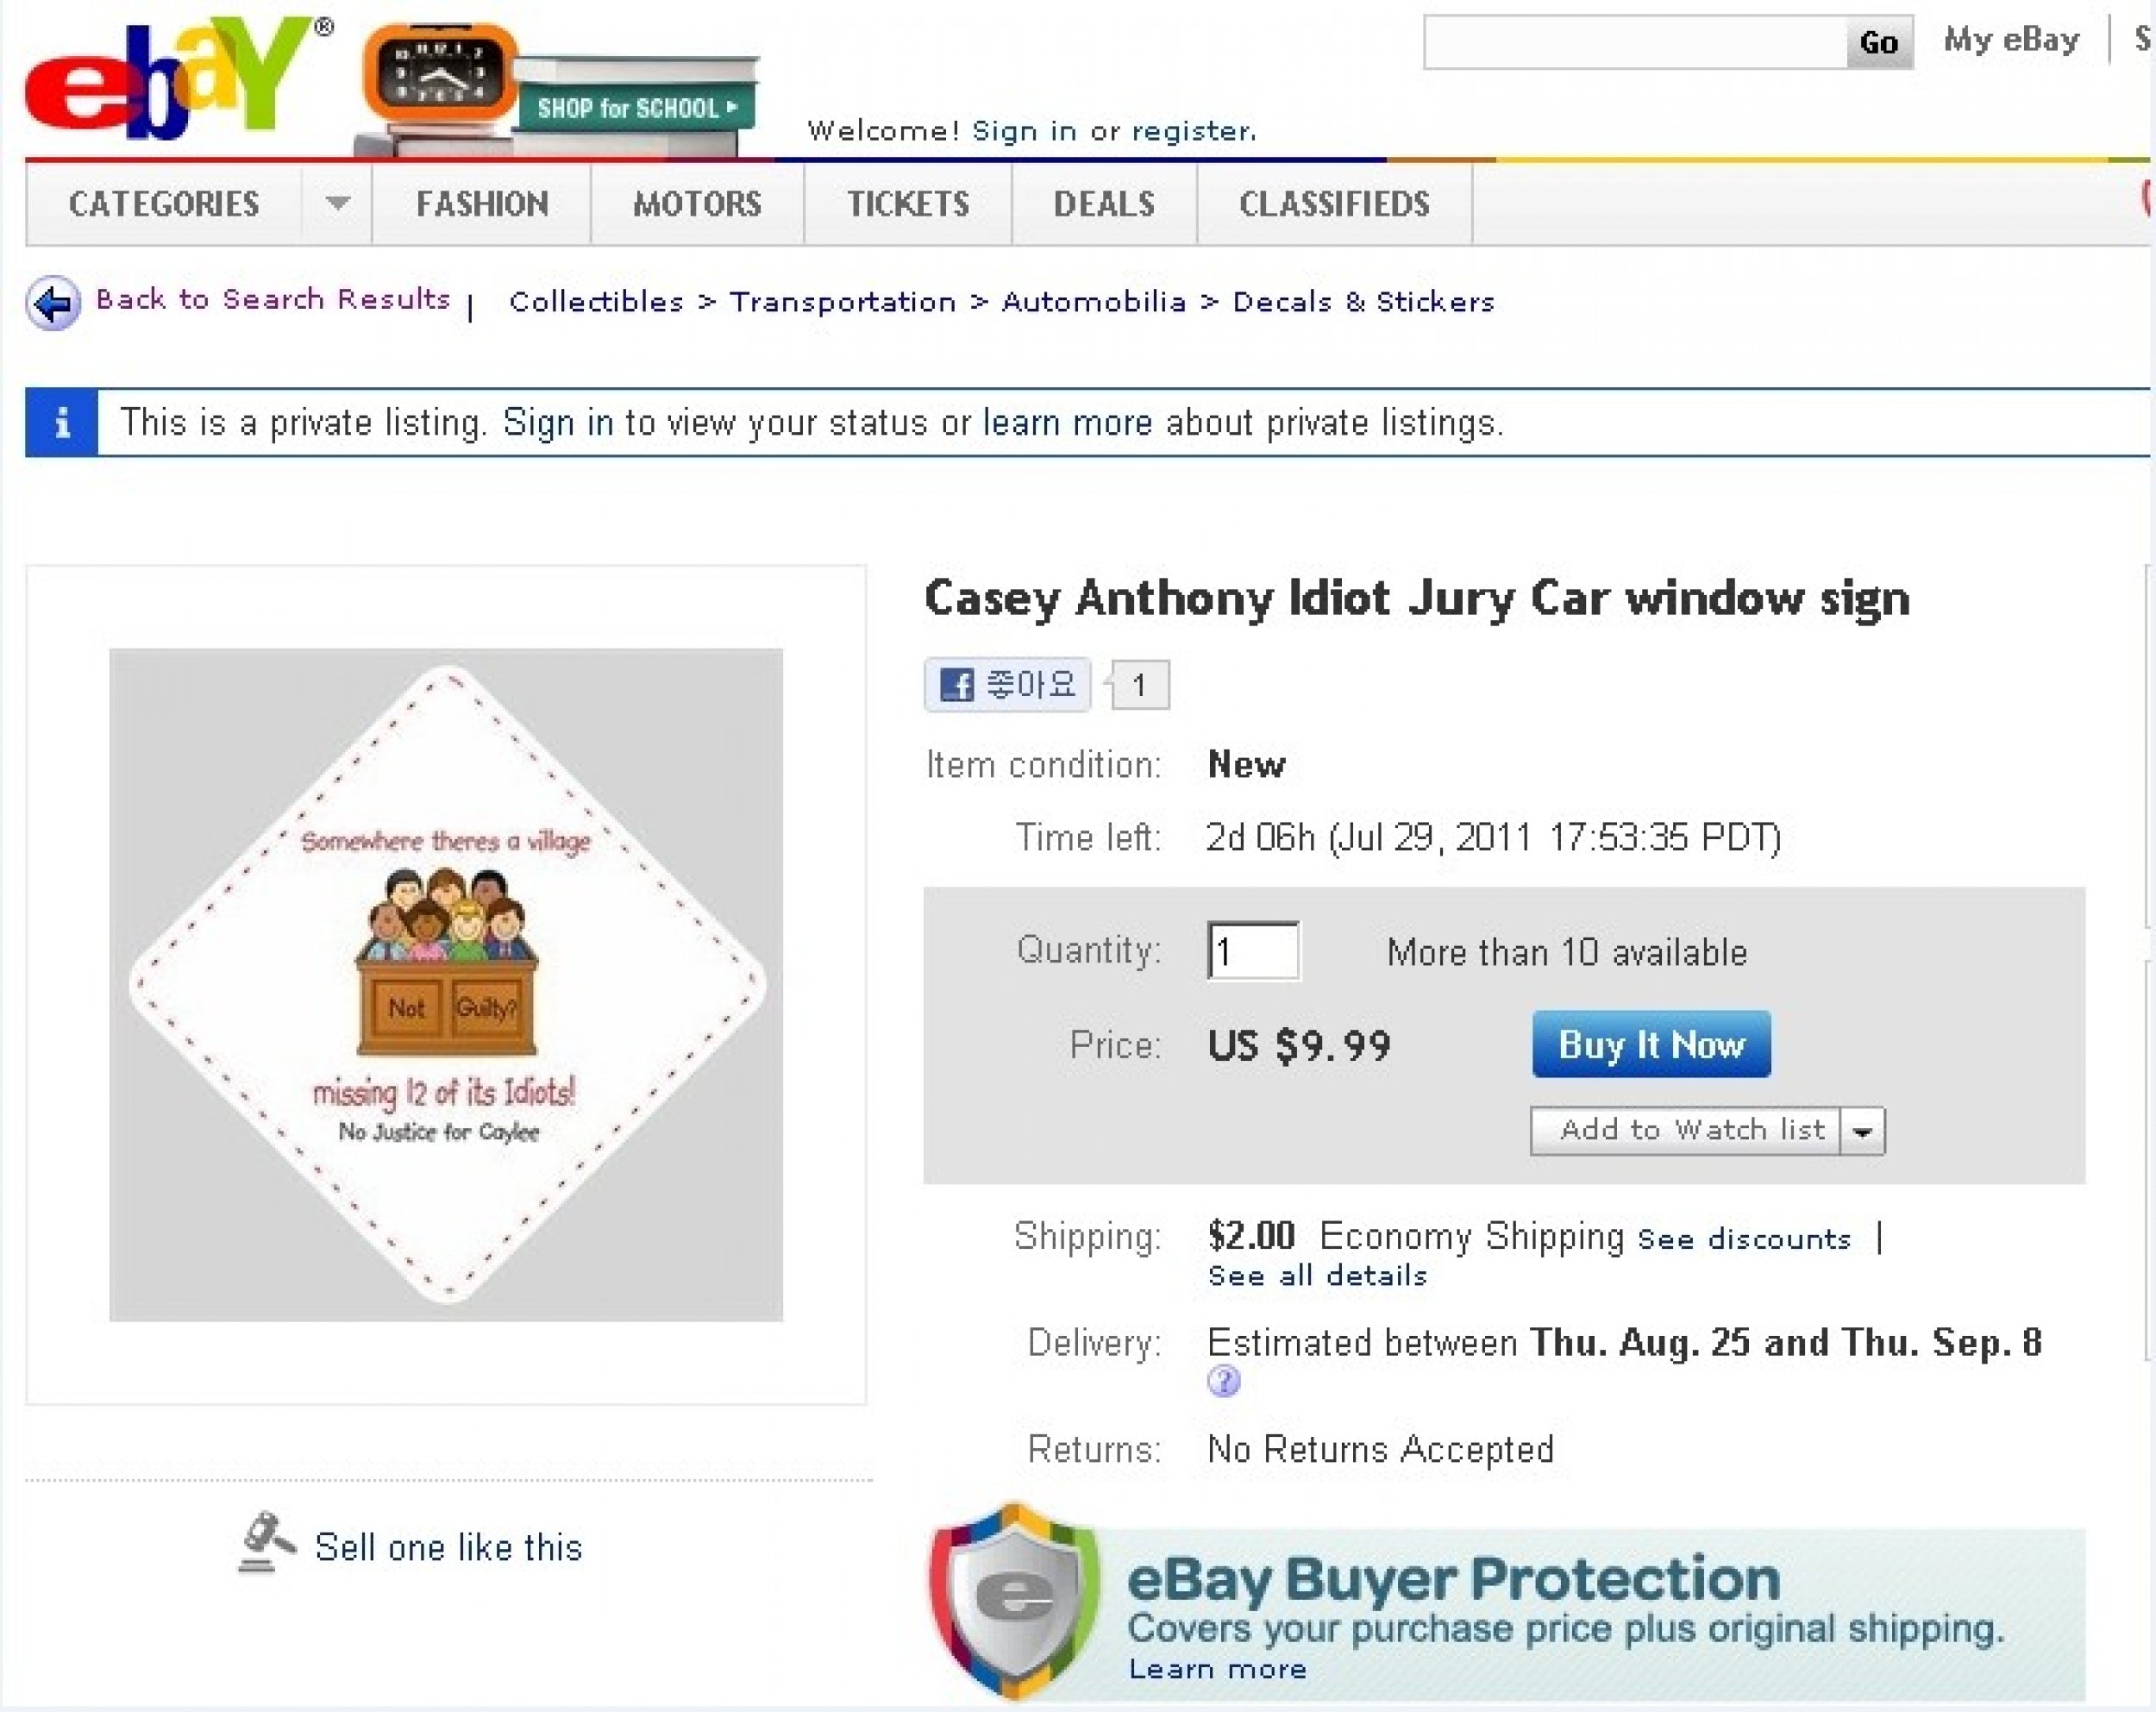 Casey Anthony Idiot Jury Car window sign